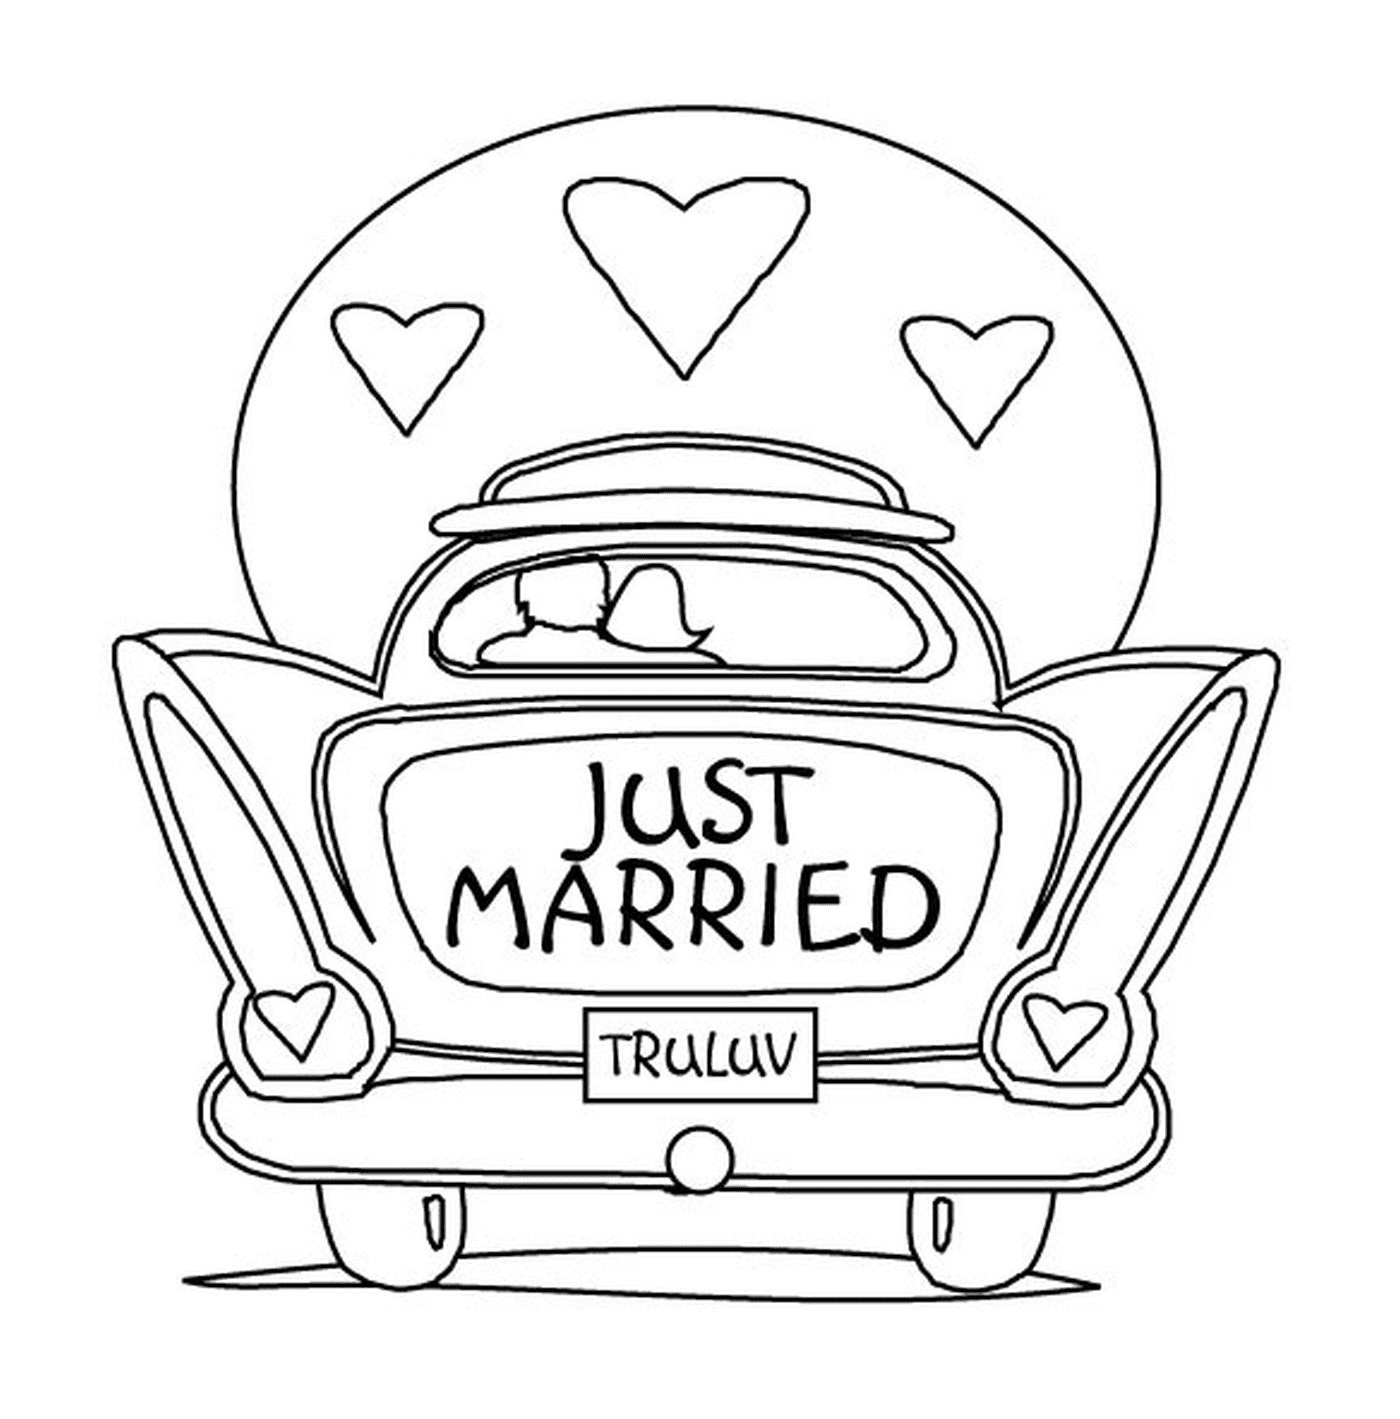  汽车婚礼,刚结婚 